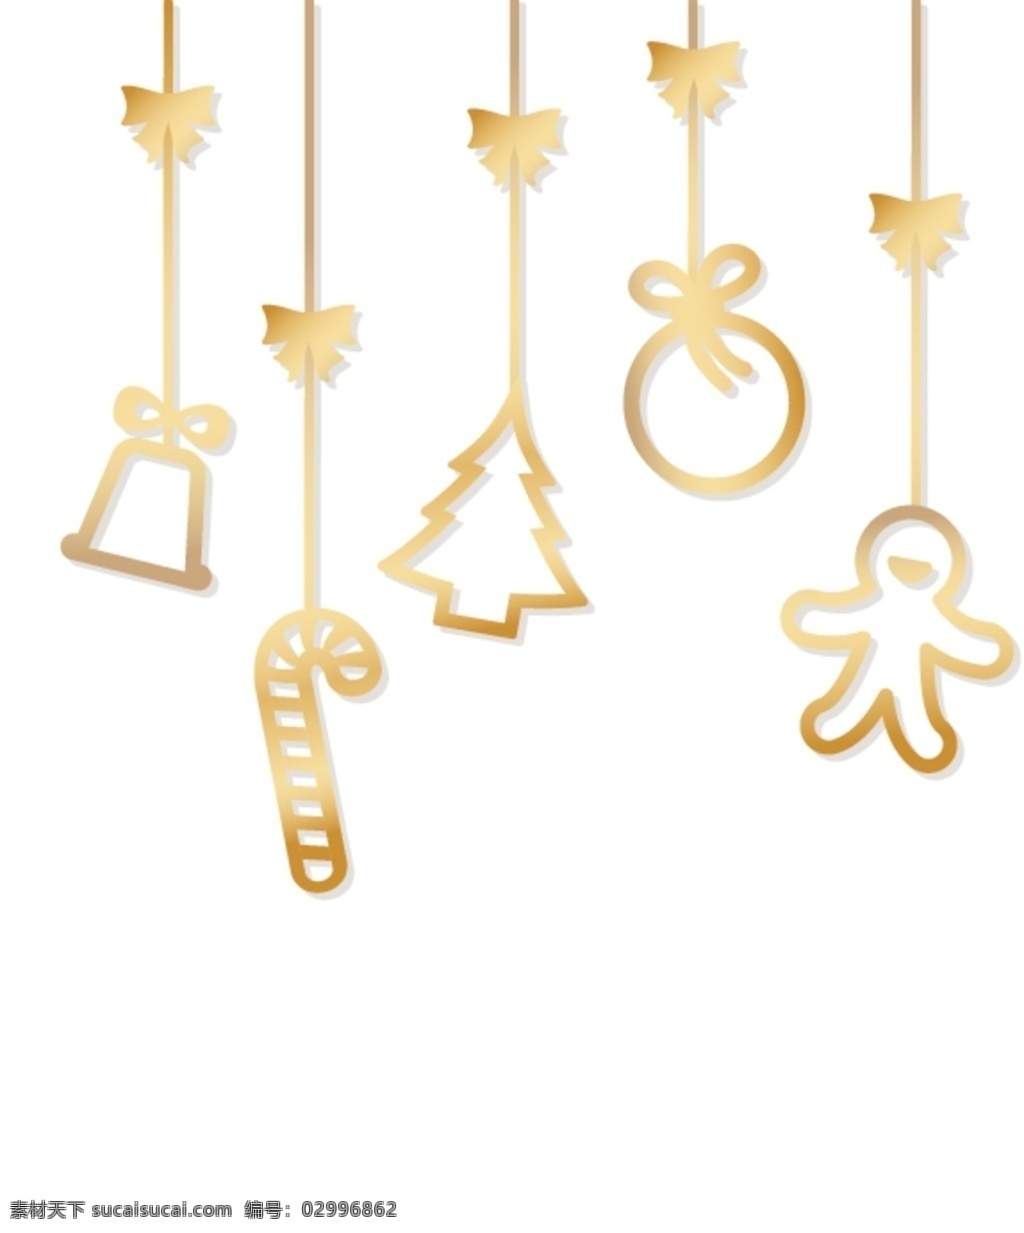 圣诞挂饰 圣诞元素 漂浮挂饰 金色 金属质感 设计元素